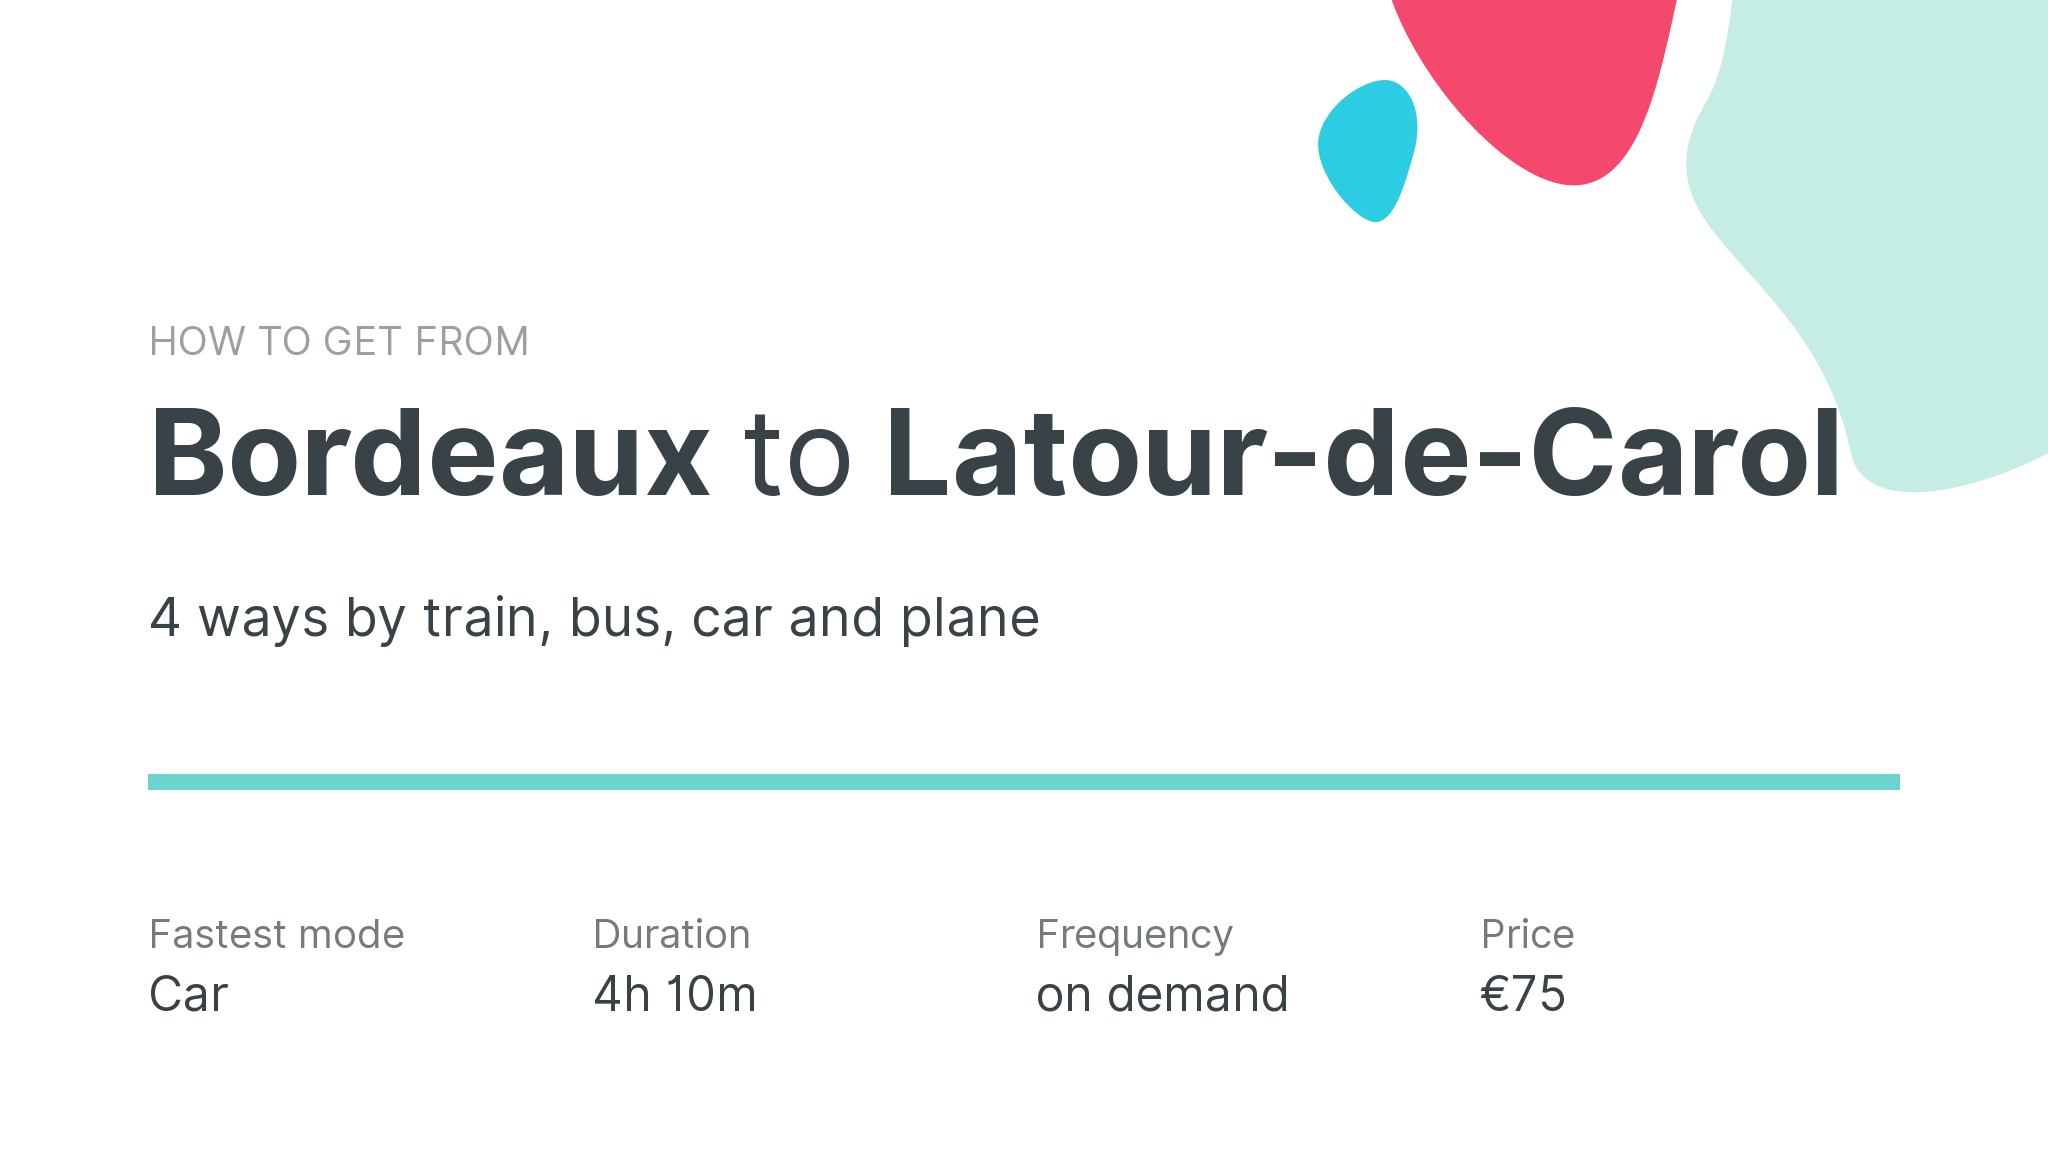 How do I get from Bordeaux to Latour-de-Carol